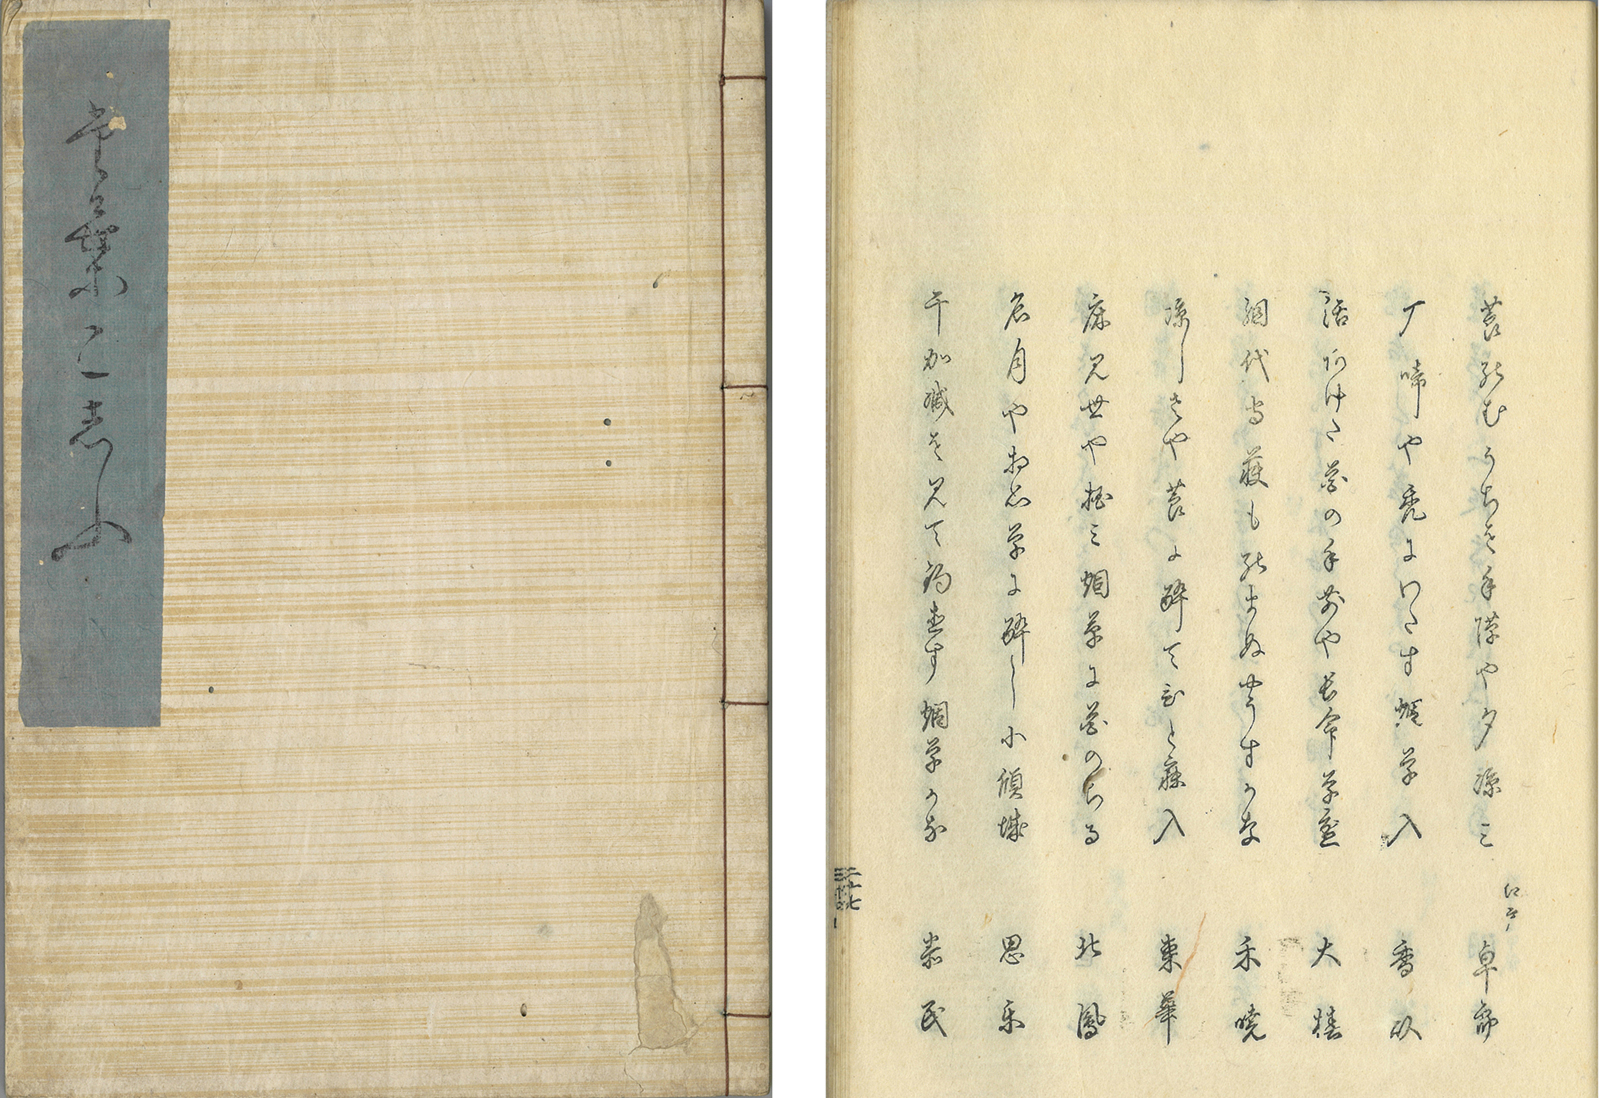 林流亭一澄篇『俳諧煙草集』 慶応元年（1865） たばこと塩の博物館蔵